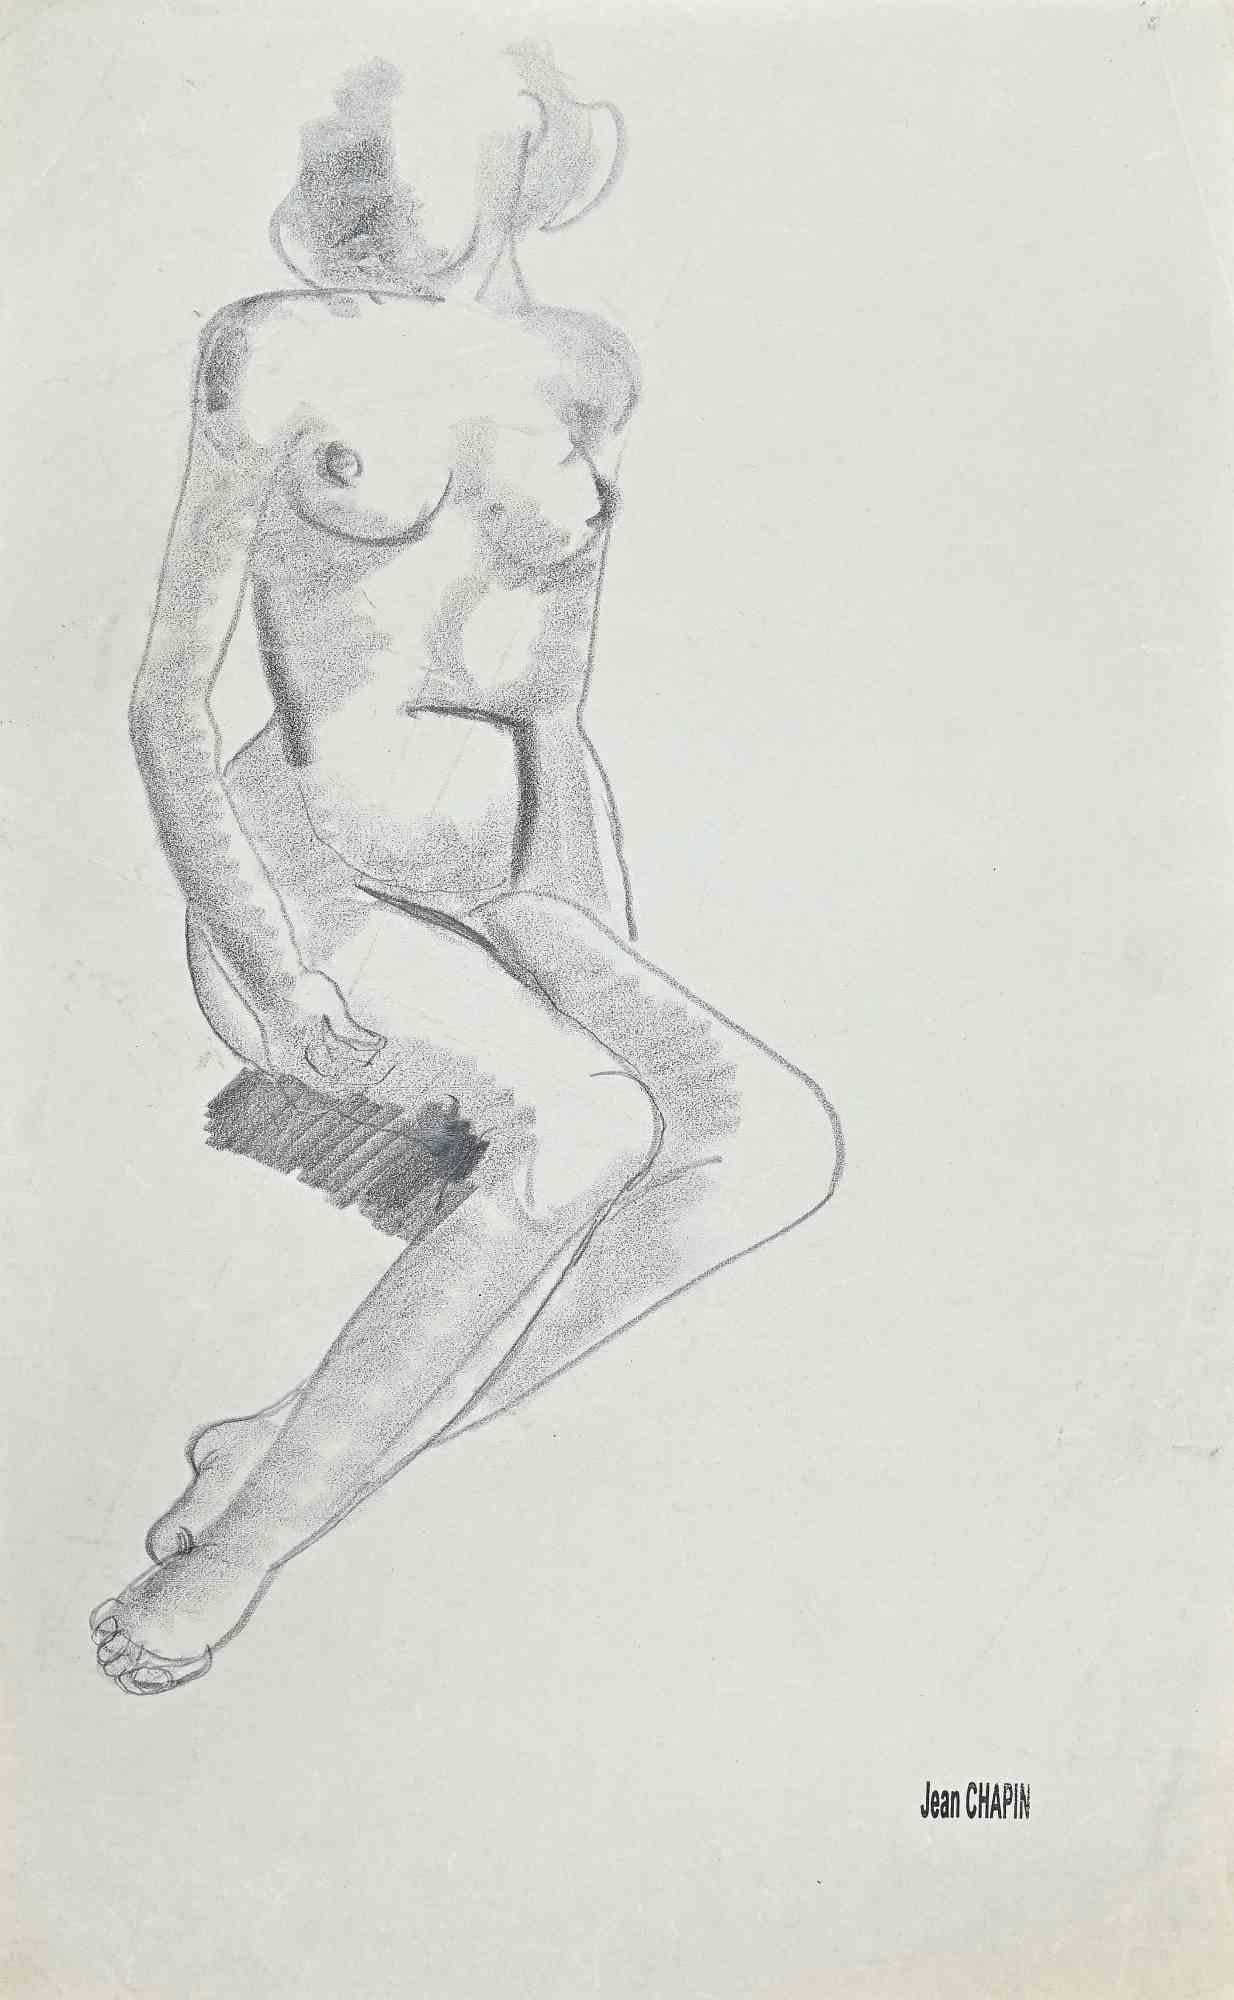 Nude Woman ist eine Bleistift- und Kohlezeichnung von Jean Chapin aus den 1950er Jahren.

Signaturstempel auf dem vergilbten Papier.

Guter Zustand, mit Ausnahme einer leichten Faltung.